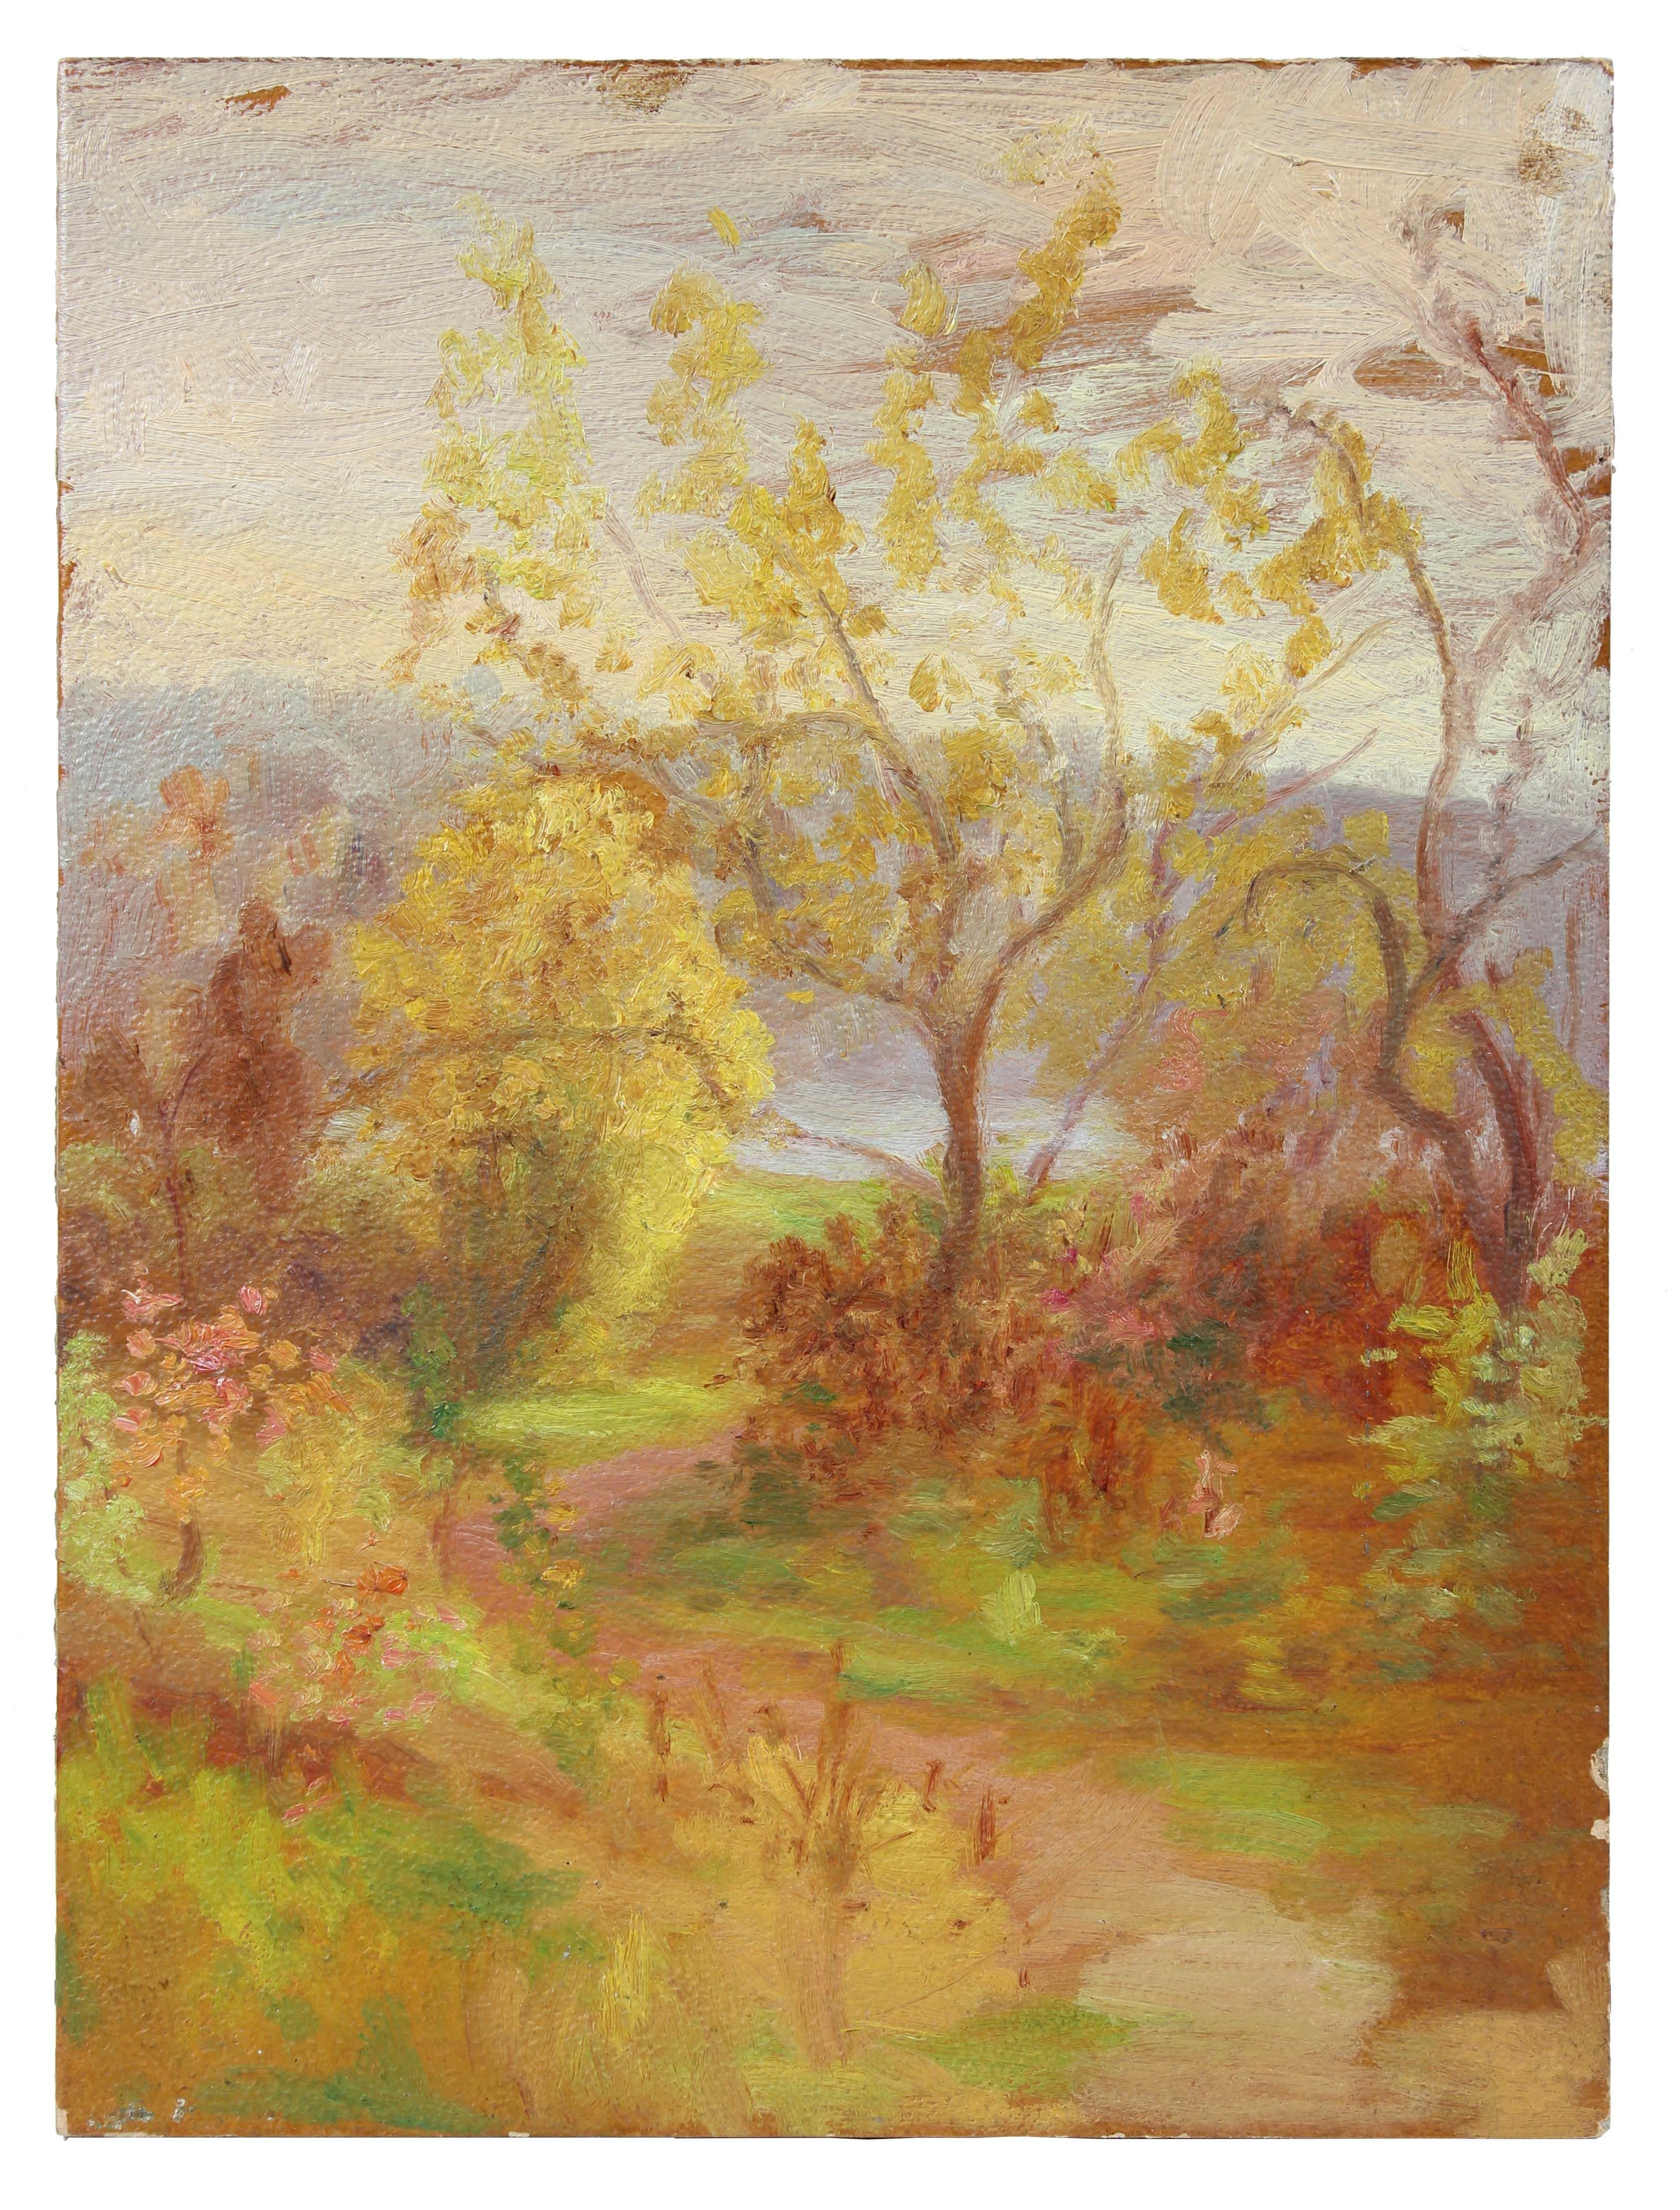 Duncan Davidson Landscape Painting - Warm Impressionist Landscape, Oil Painting, Circa 1900-1930s